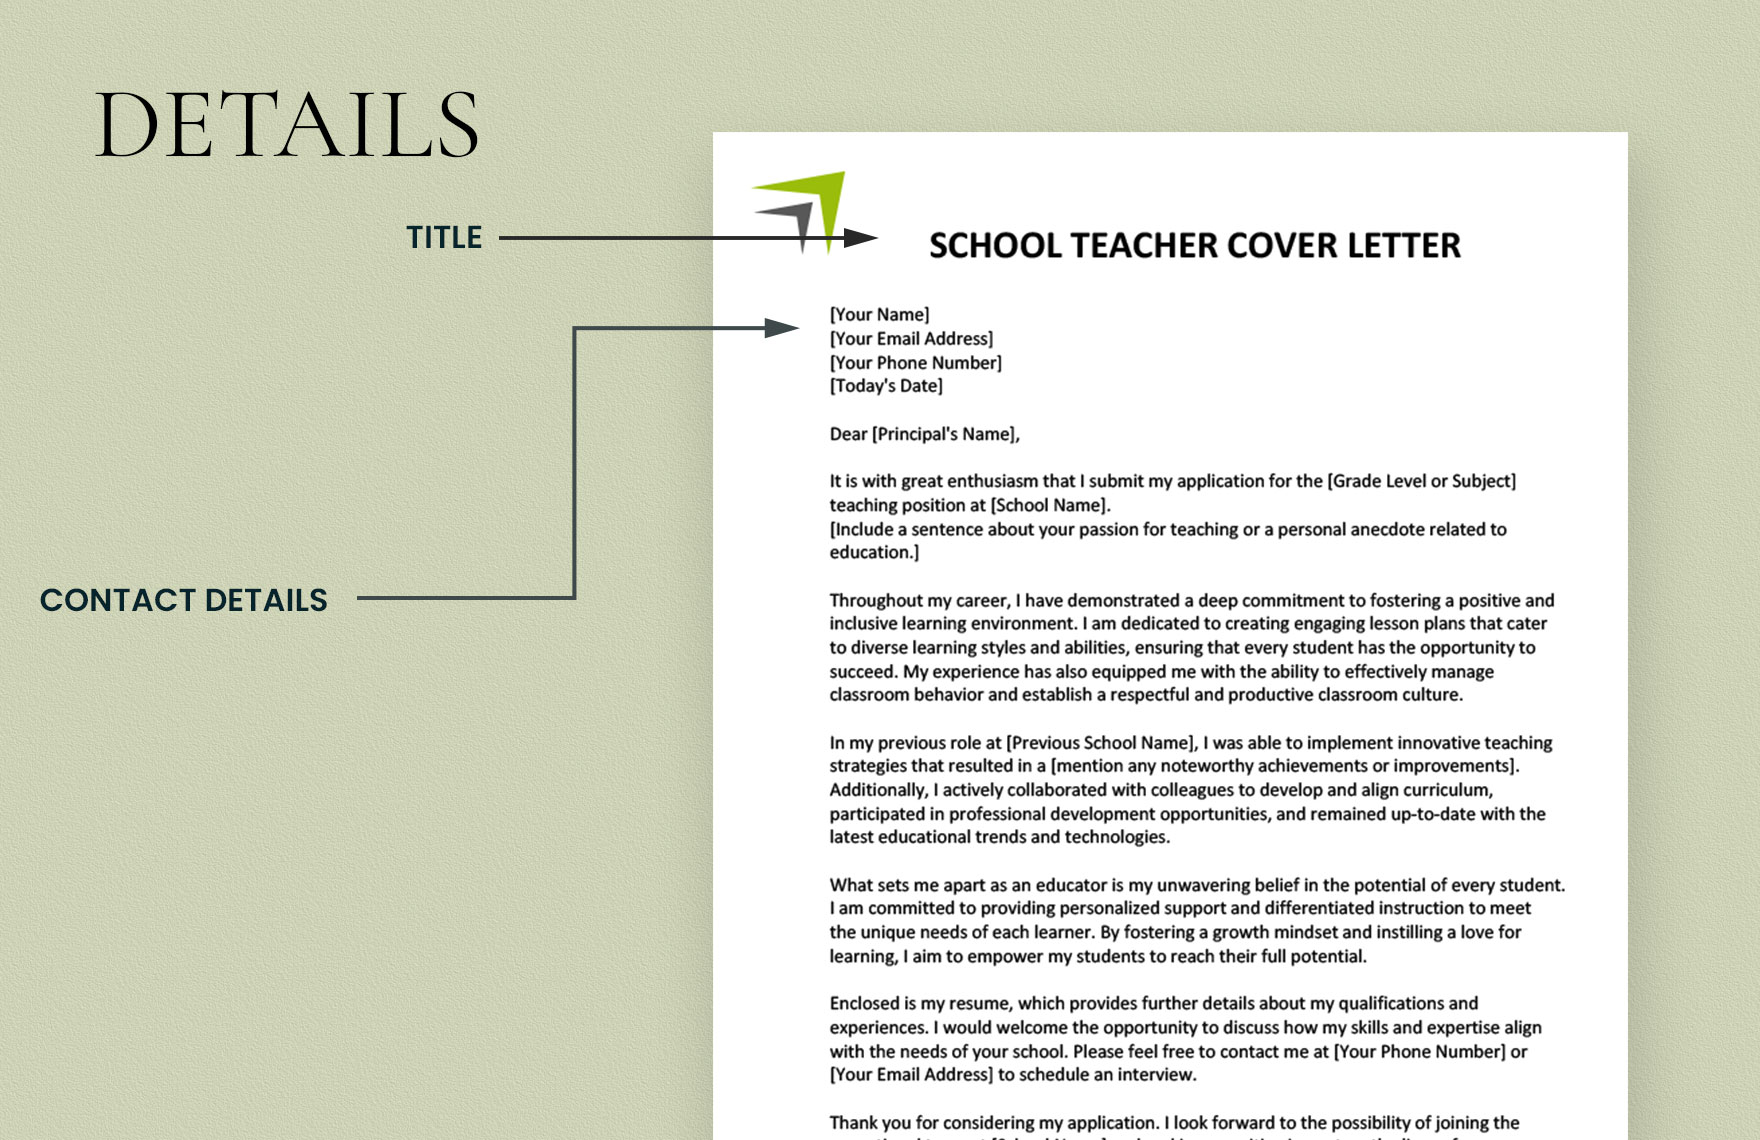 School Teacher Cover Letter